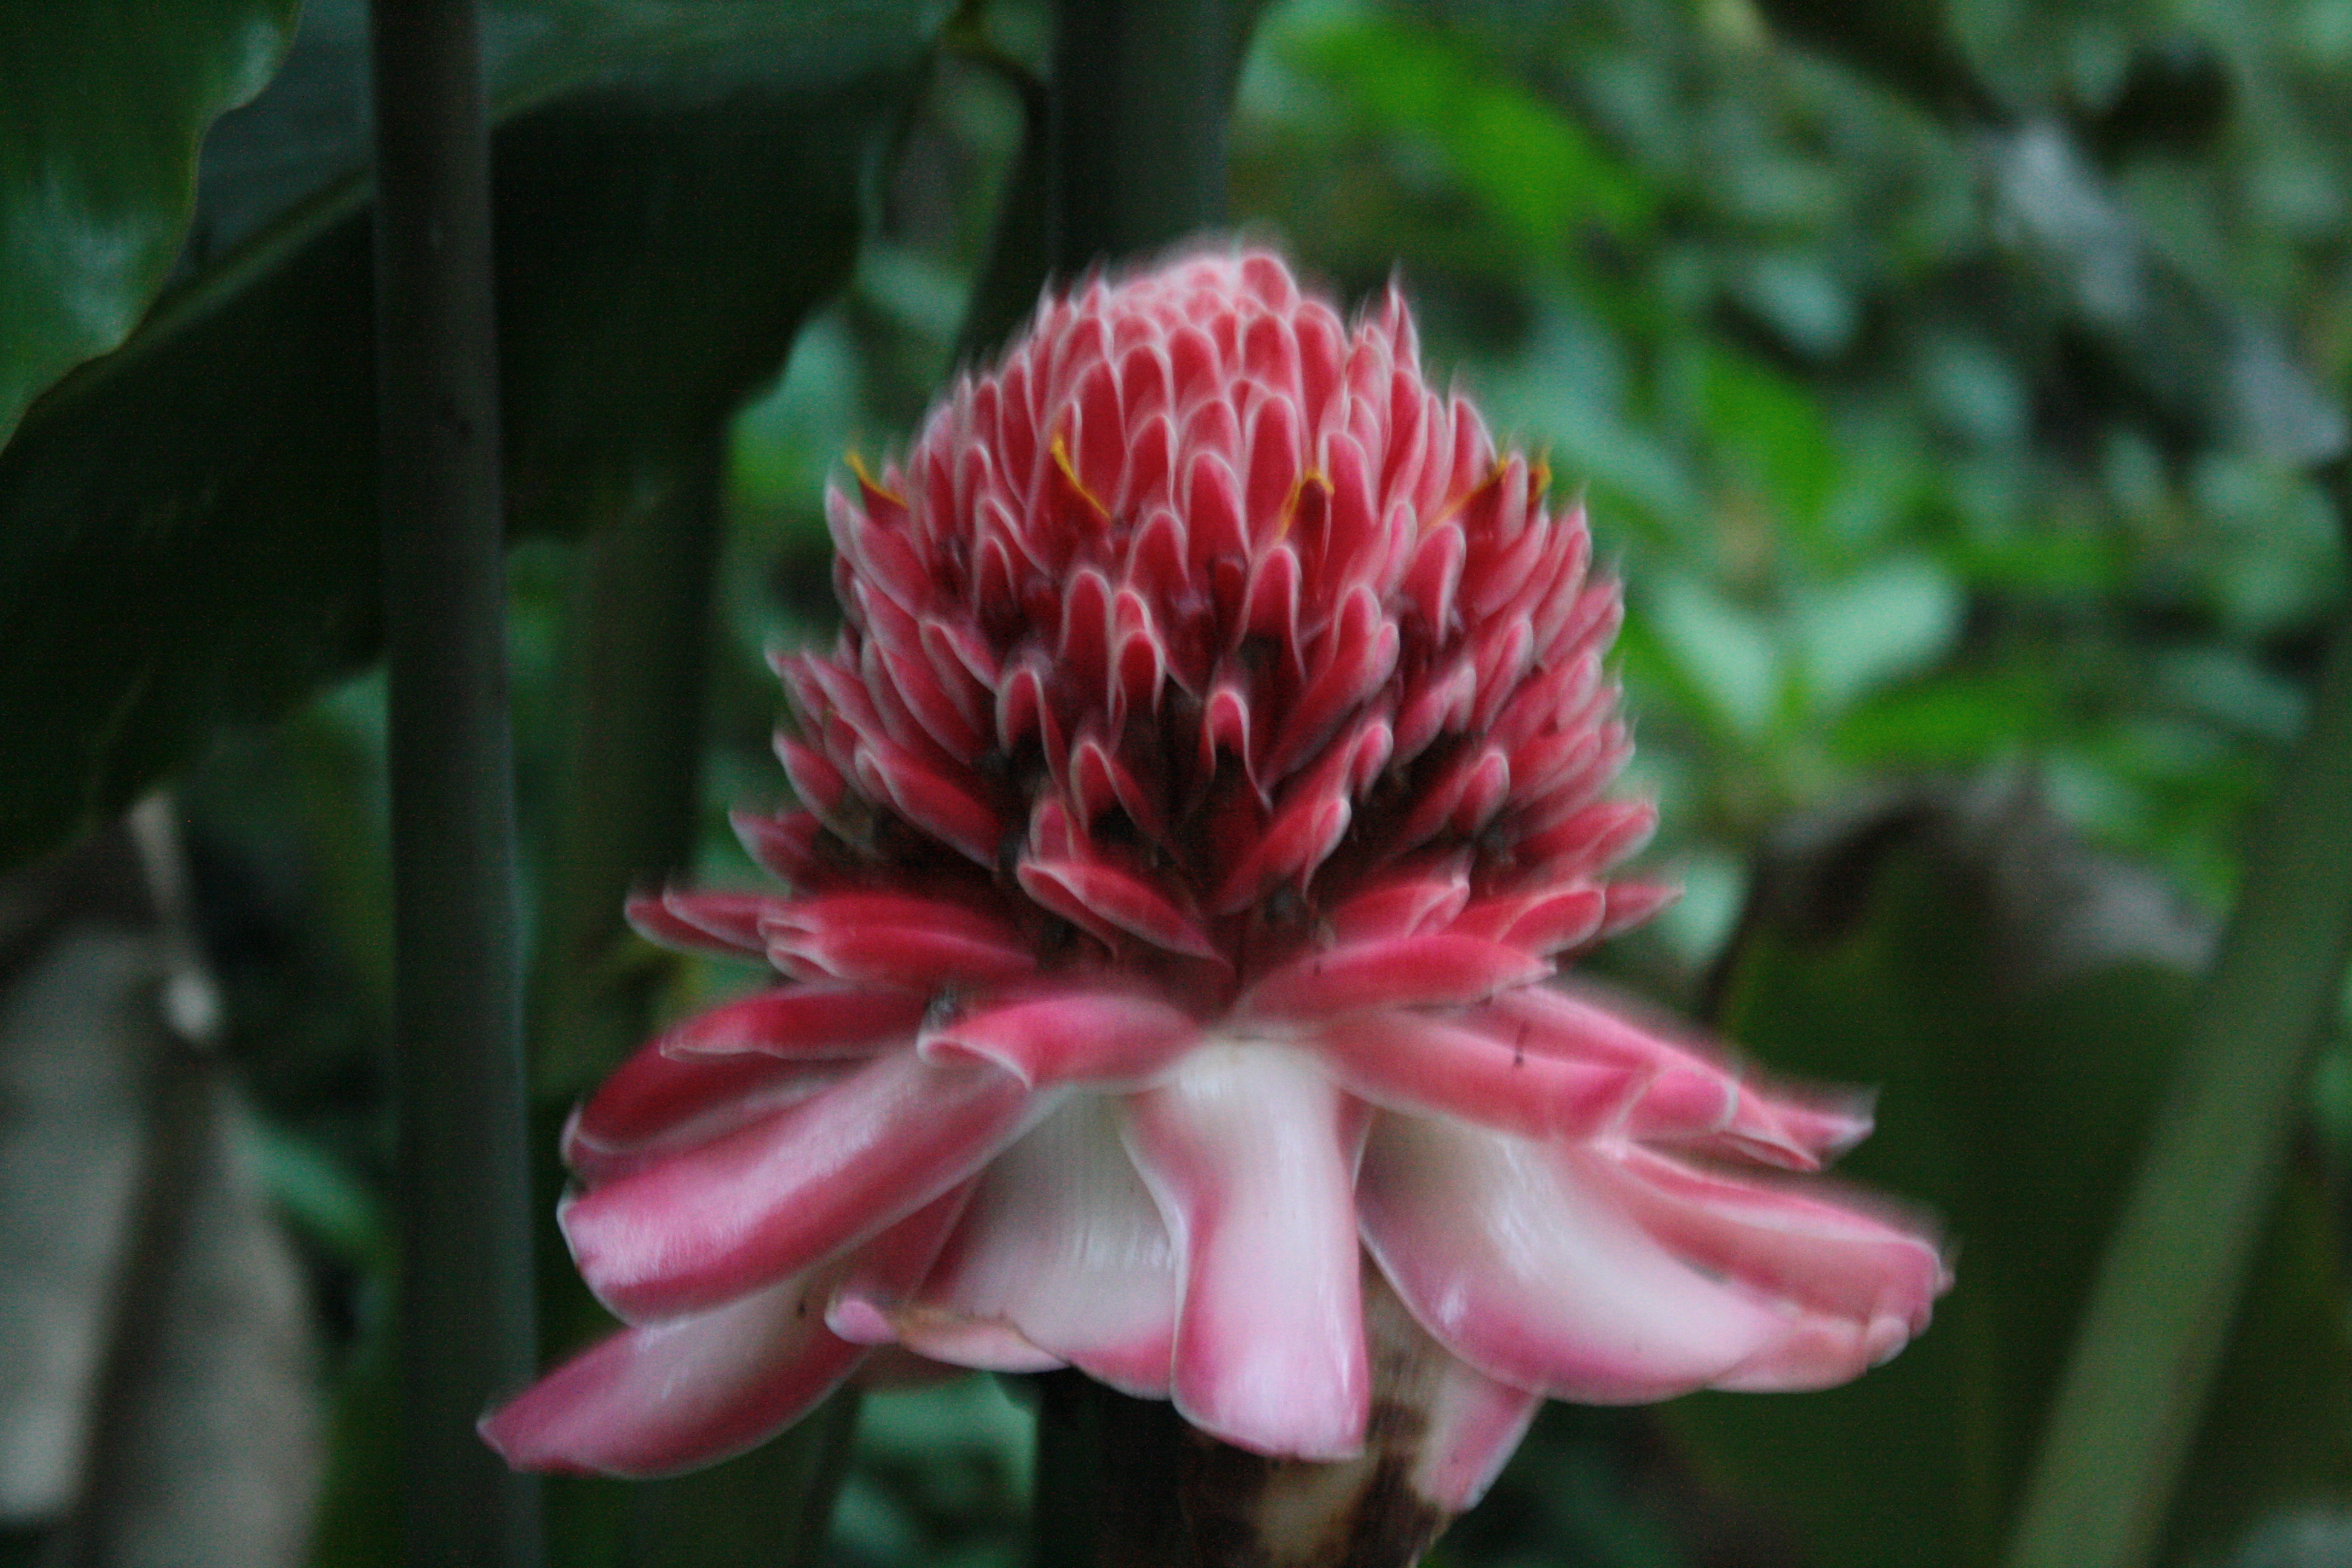 Mayotte, une rose de porcelaine